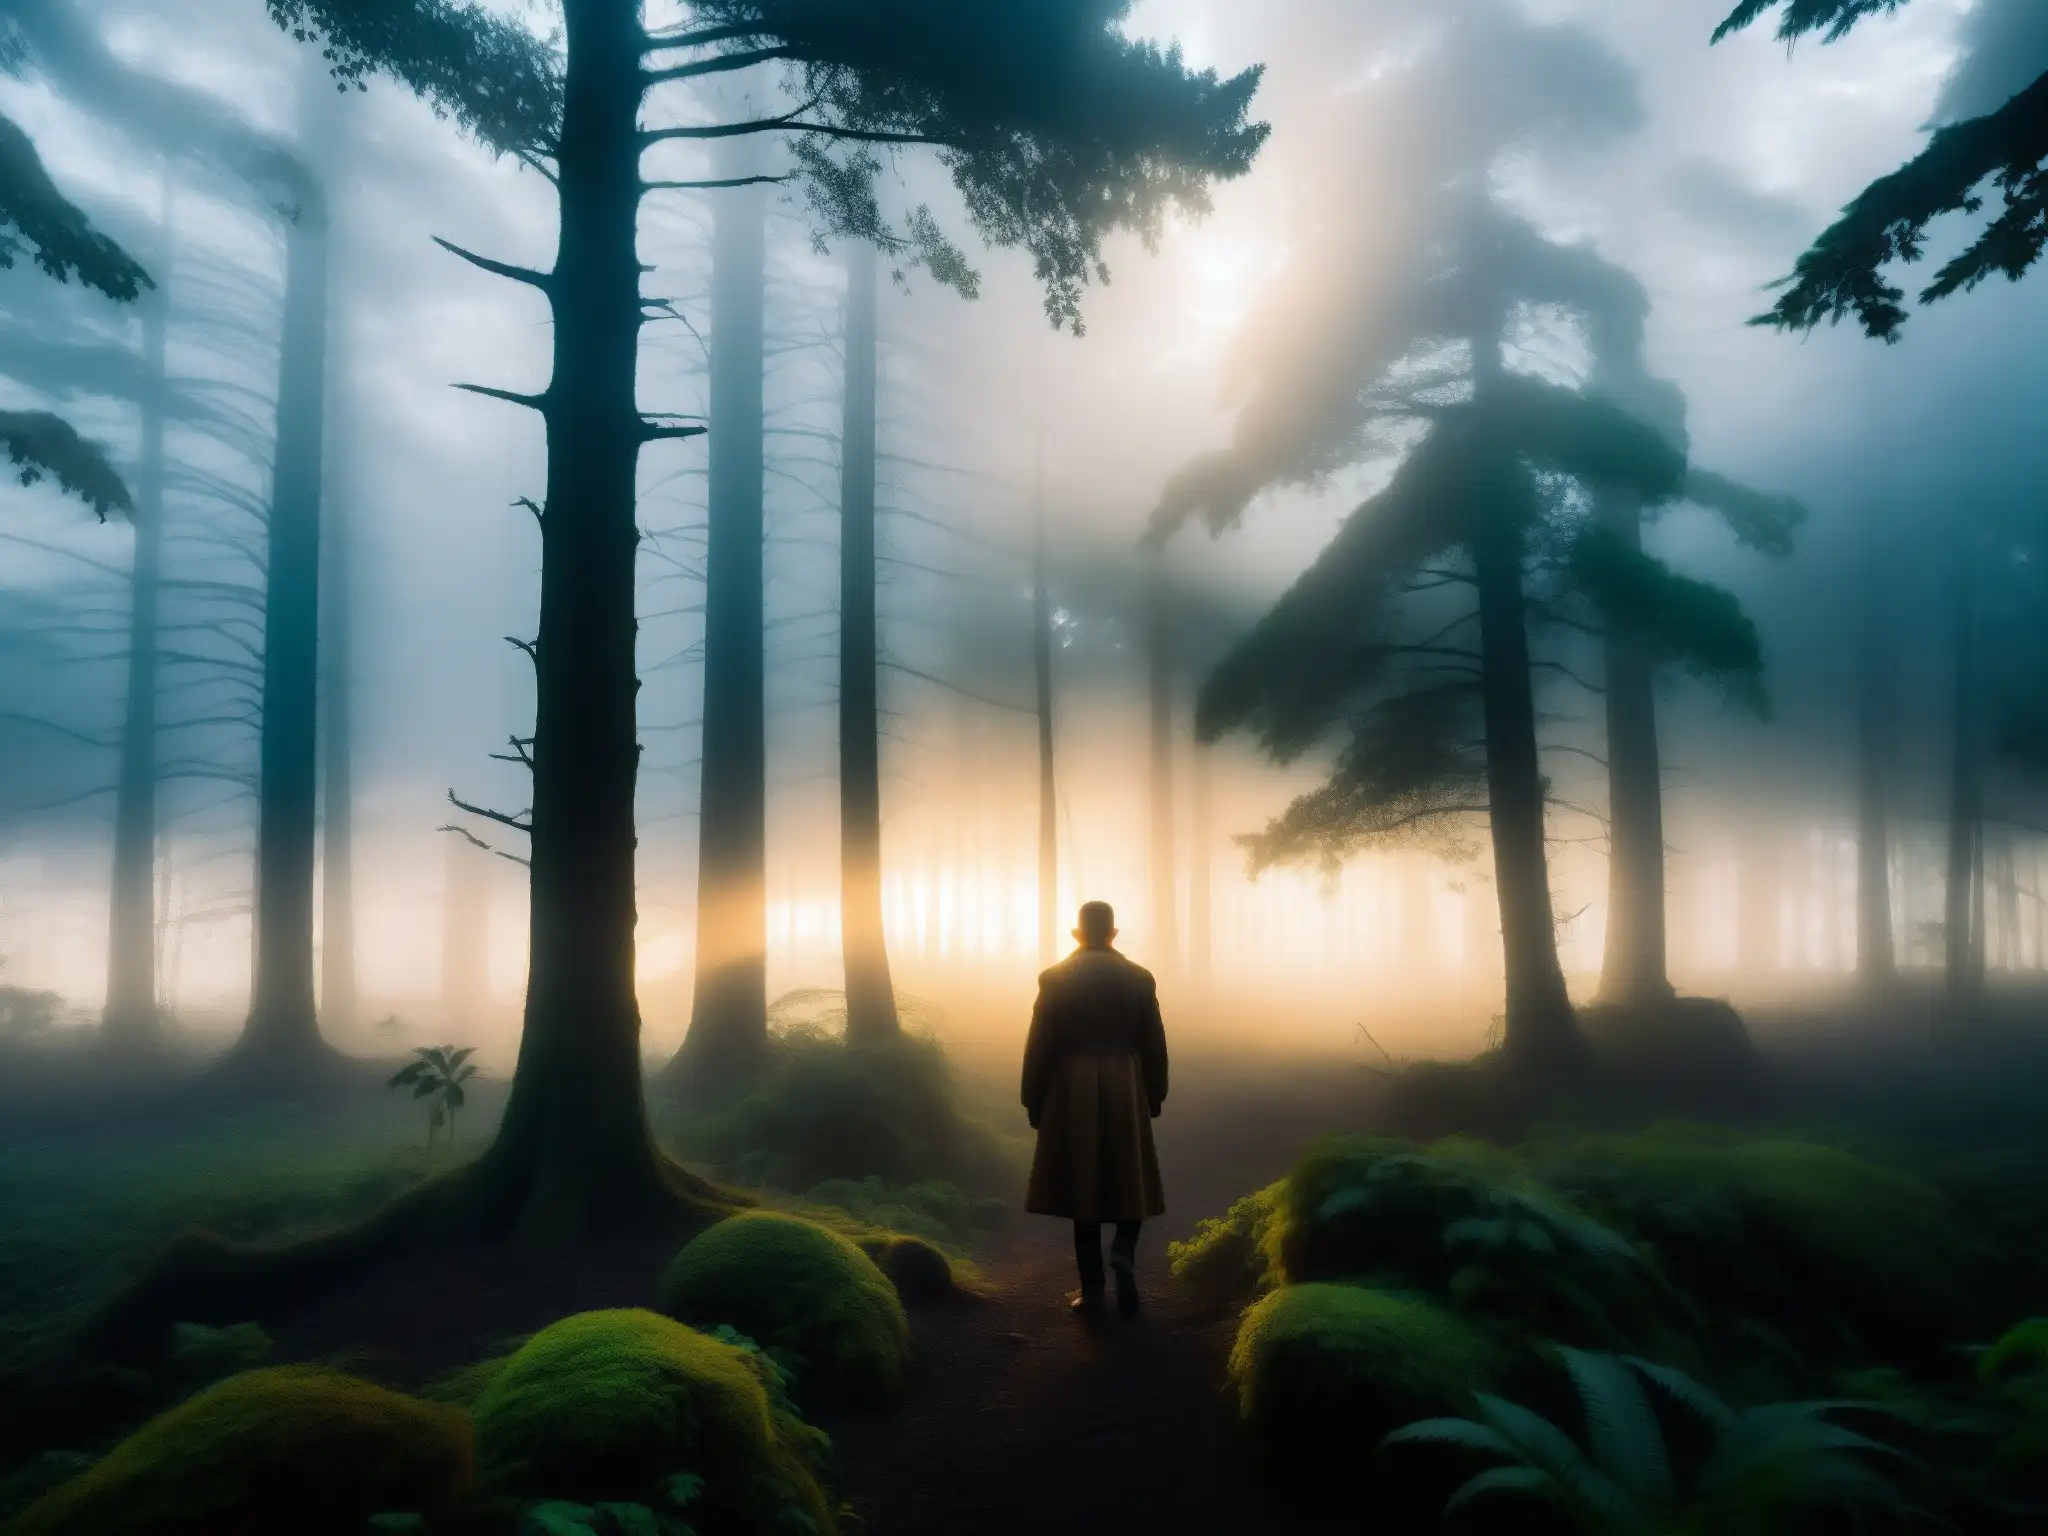 Silueta misteriosa entre la niebla en un bosque chilote, evocando la seducción y misterio de la leyenda del Trauco